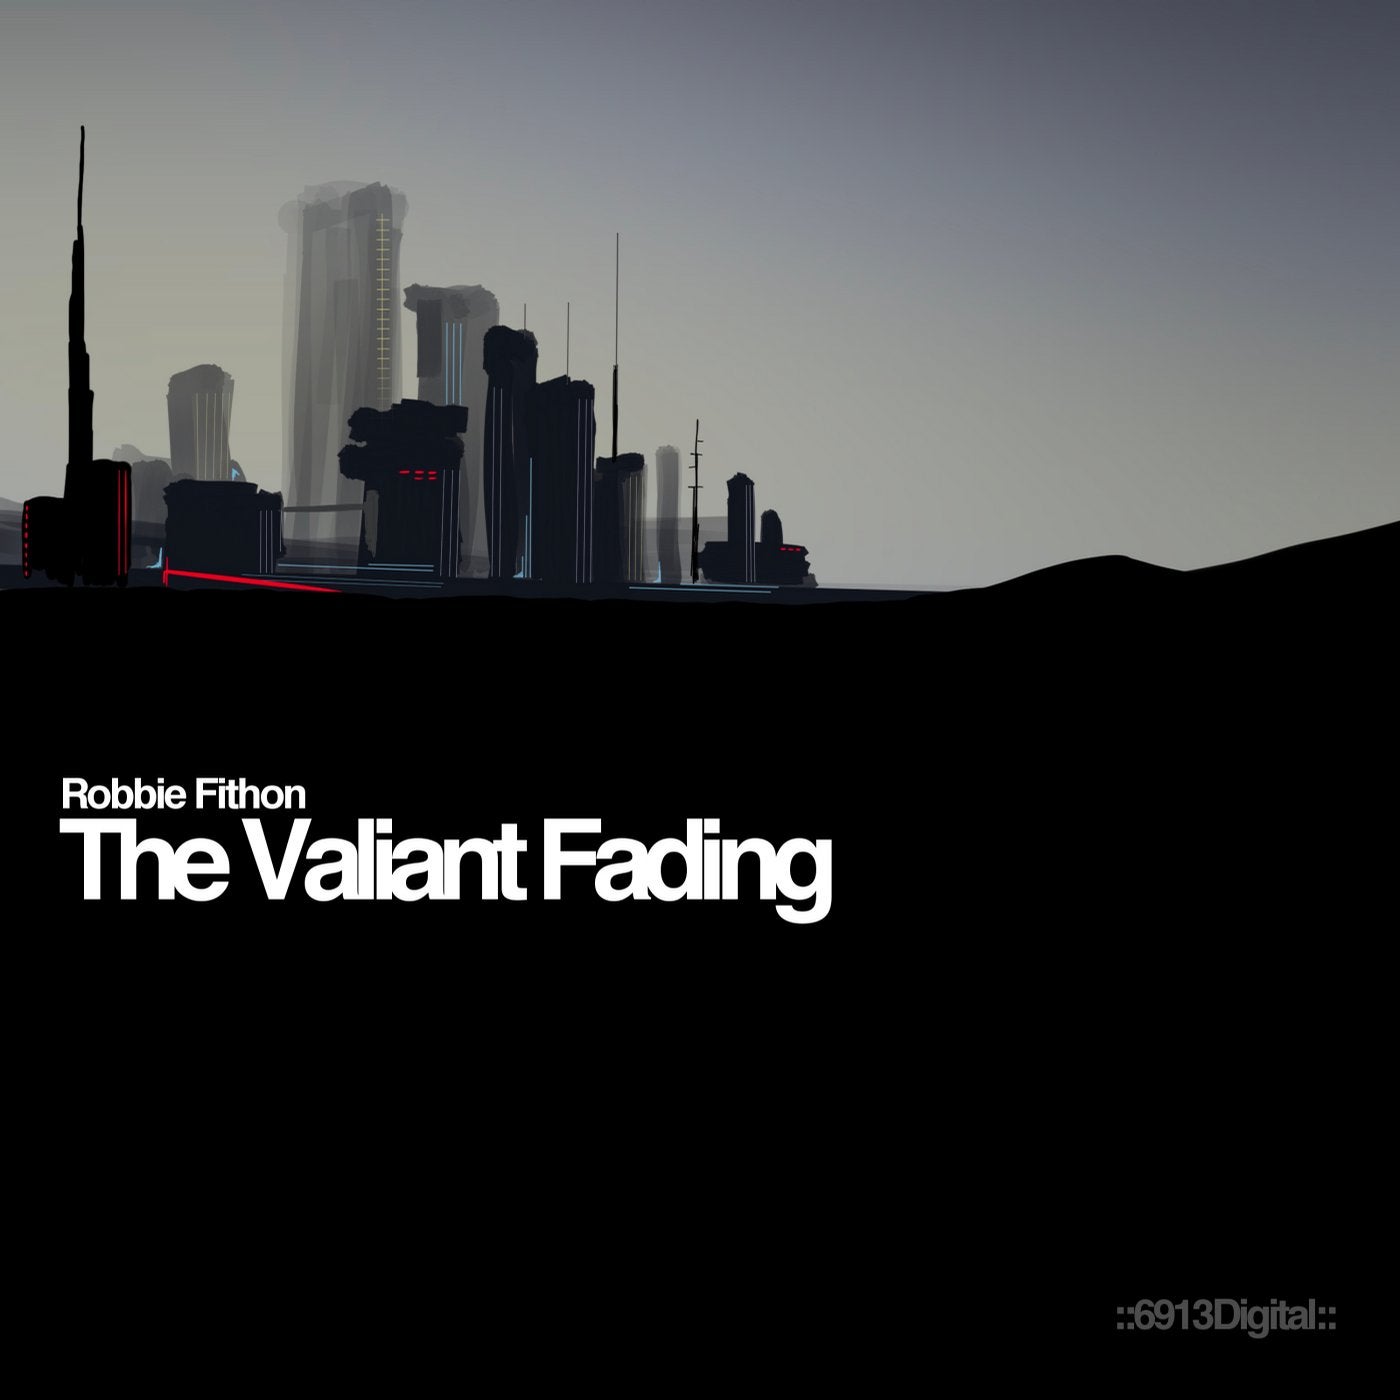 The Valiant Fading